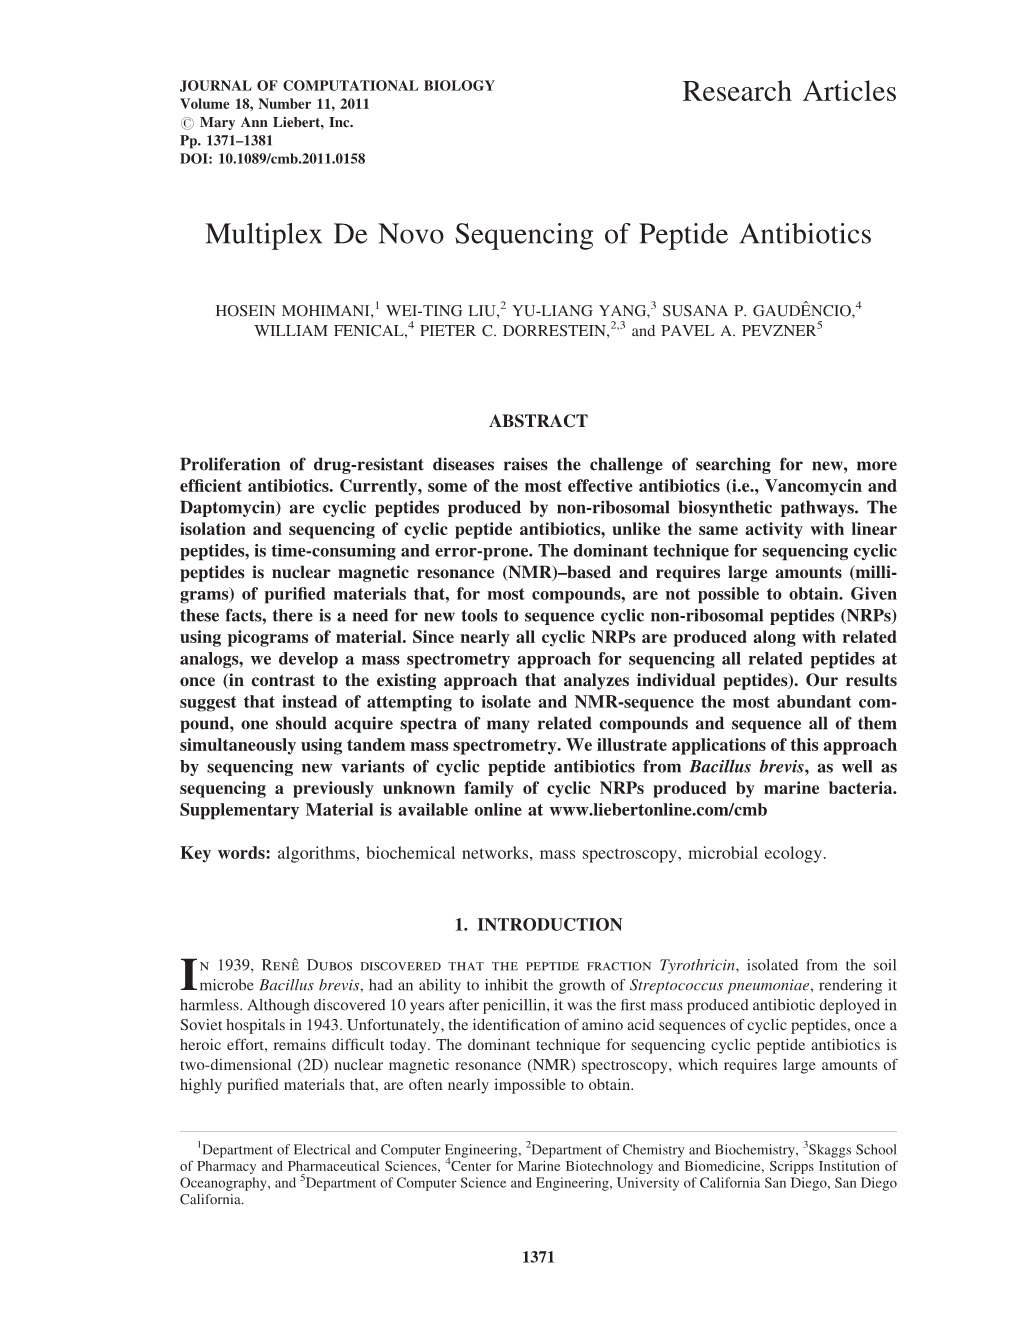 Multiplex De Novo Sequencing of Peptide Antibiotics